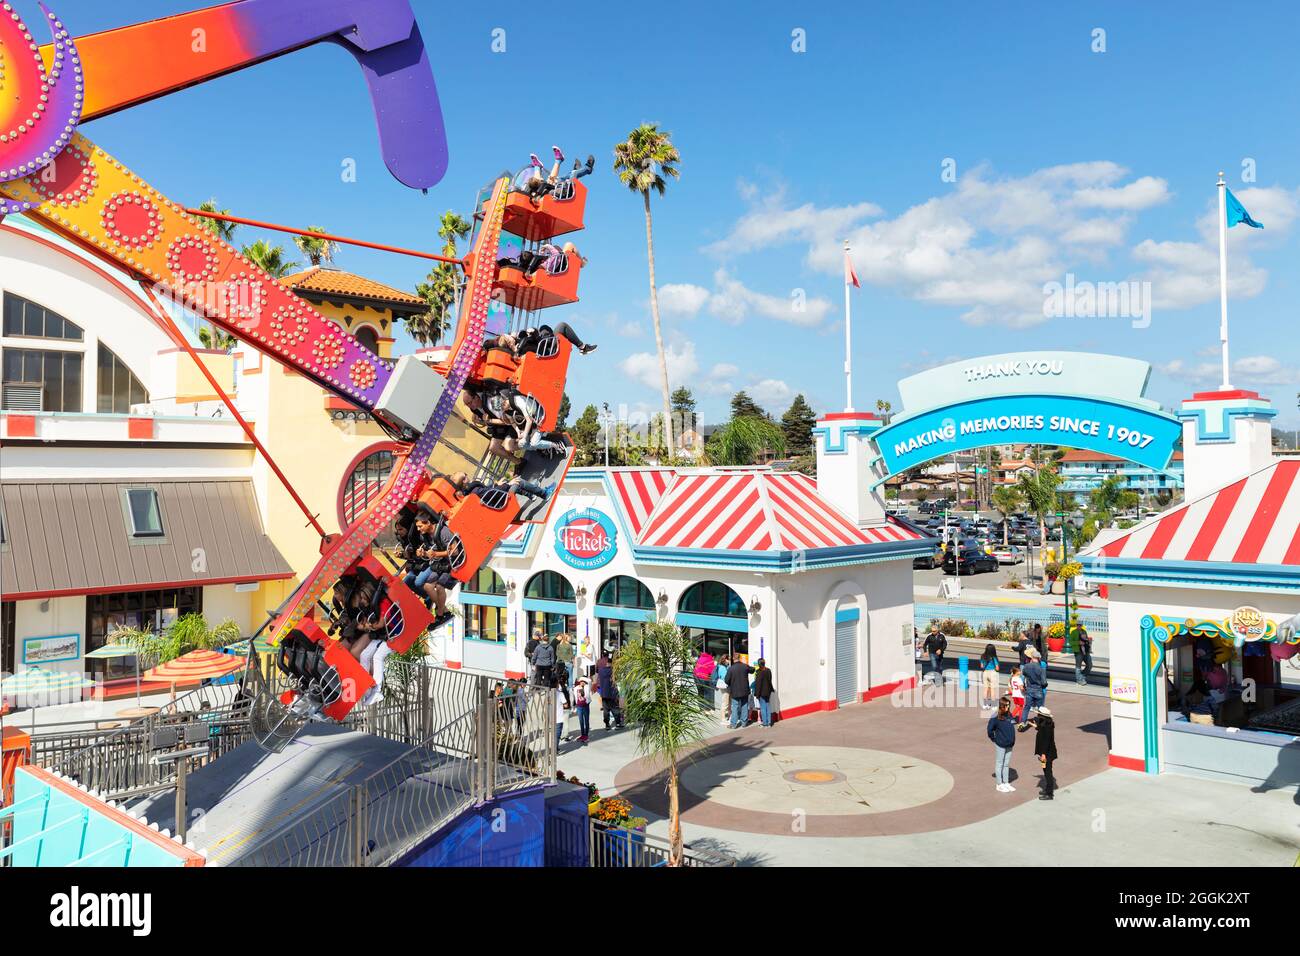 Parque de atracciones en Santa Cruz Beach Board Walk, California, Estados Unidos Foto de stock